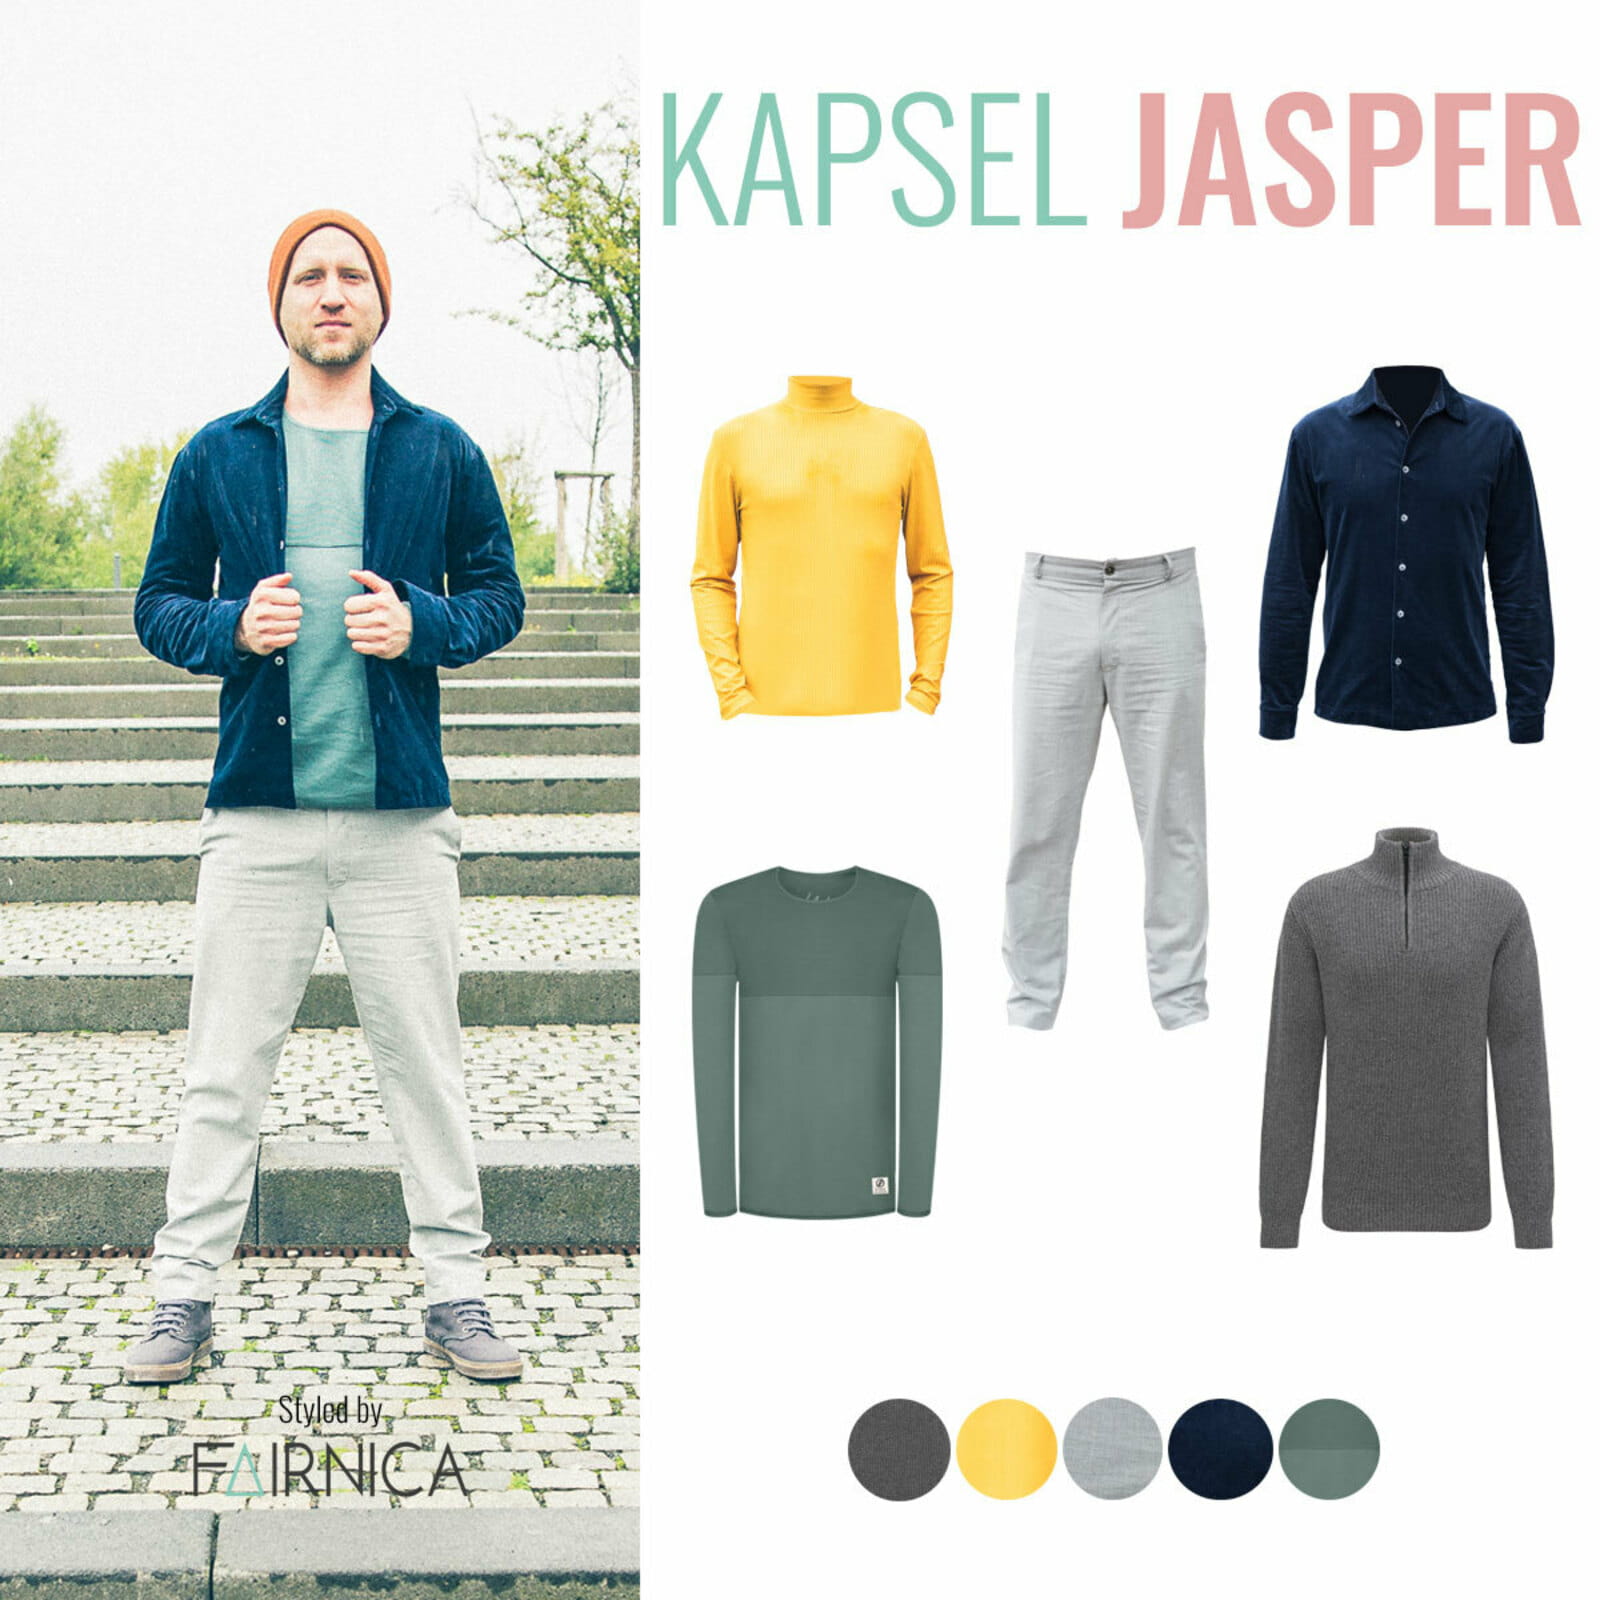 Übersicht aller Kleidungsstücke aus Kapsel Jasper auf der rechten Seite des Bilds. Links steht ein männliches Model mit der grauen Stoffhose, dem grünen Pulli und dem blauen Hemd aus Kapsel Jasper. Er trägt dazu eine gelbe Beanie-Mütze.